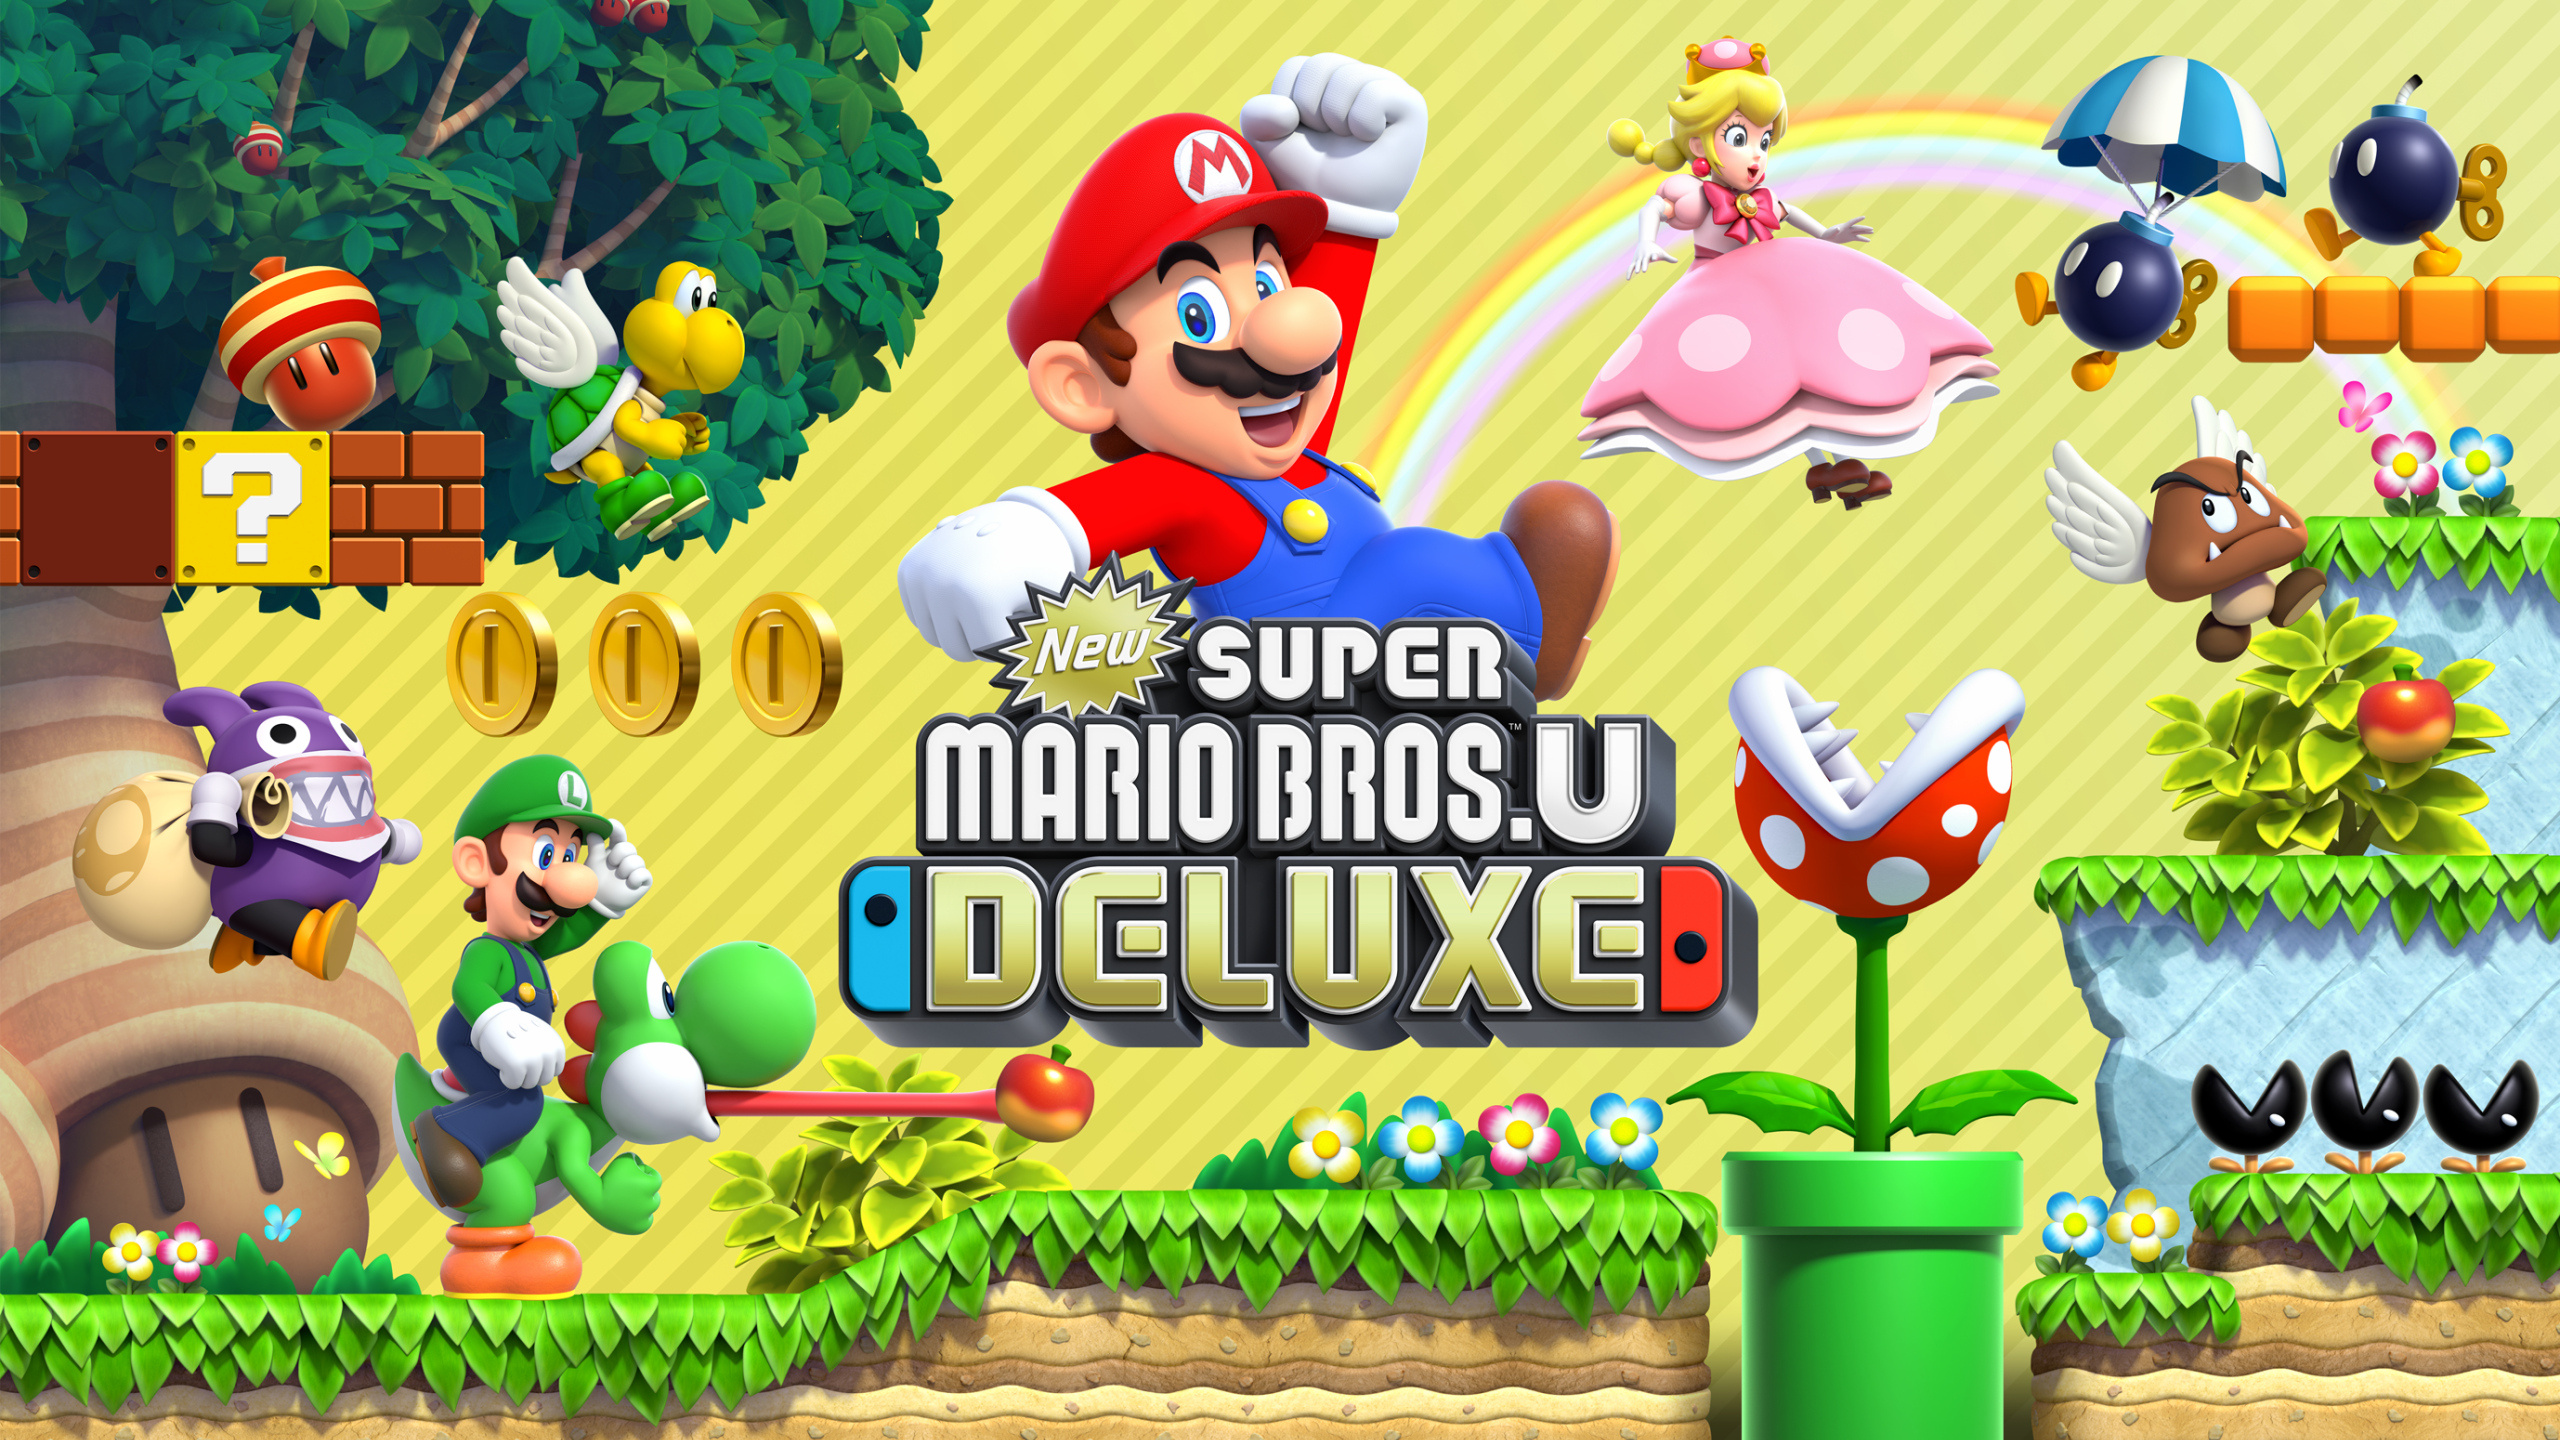 Super Mario Bros U Deluxe, Desktop gaming wallpaper, HD Mario adventure, Join the Mushroom Kingdom, 2560x1440 HD Desktop